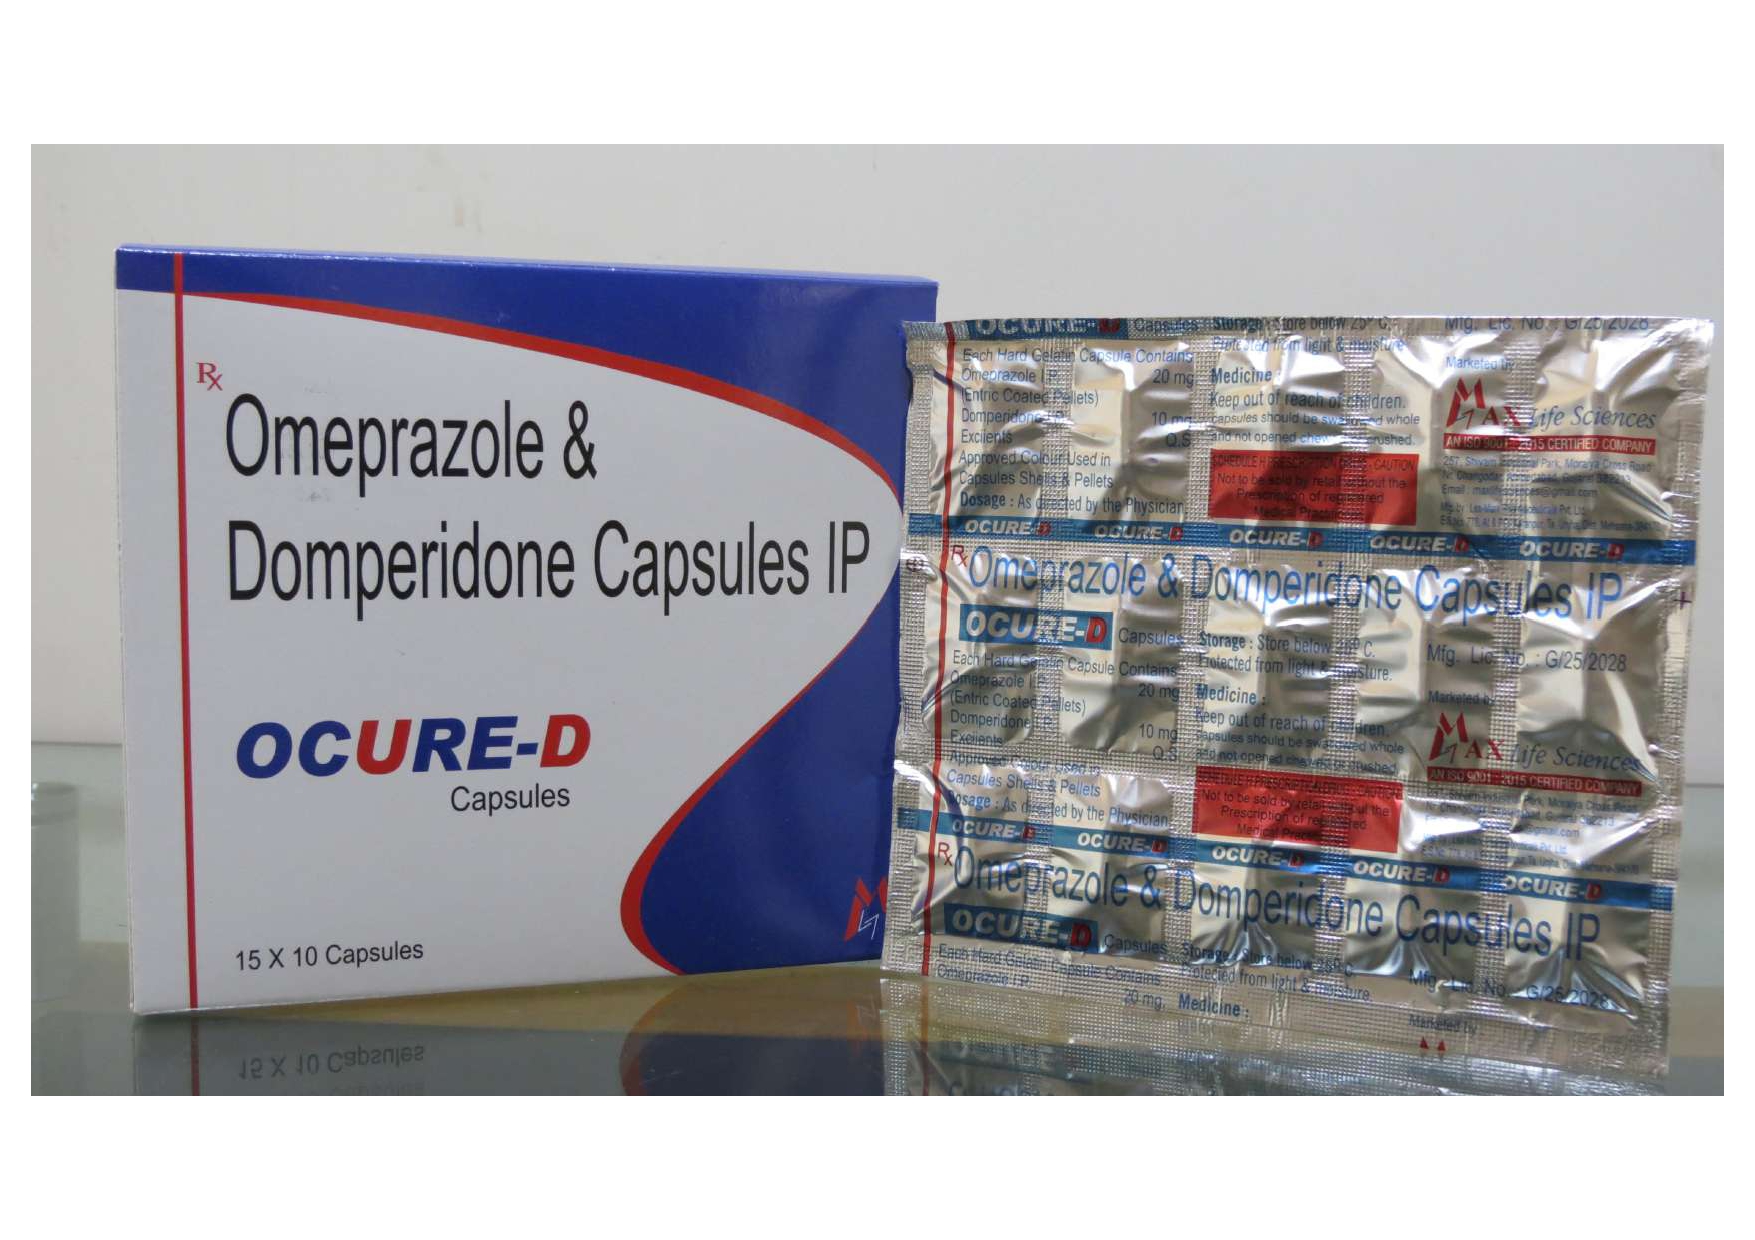 omeprazole 20mg + domperidone 10mg capsules